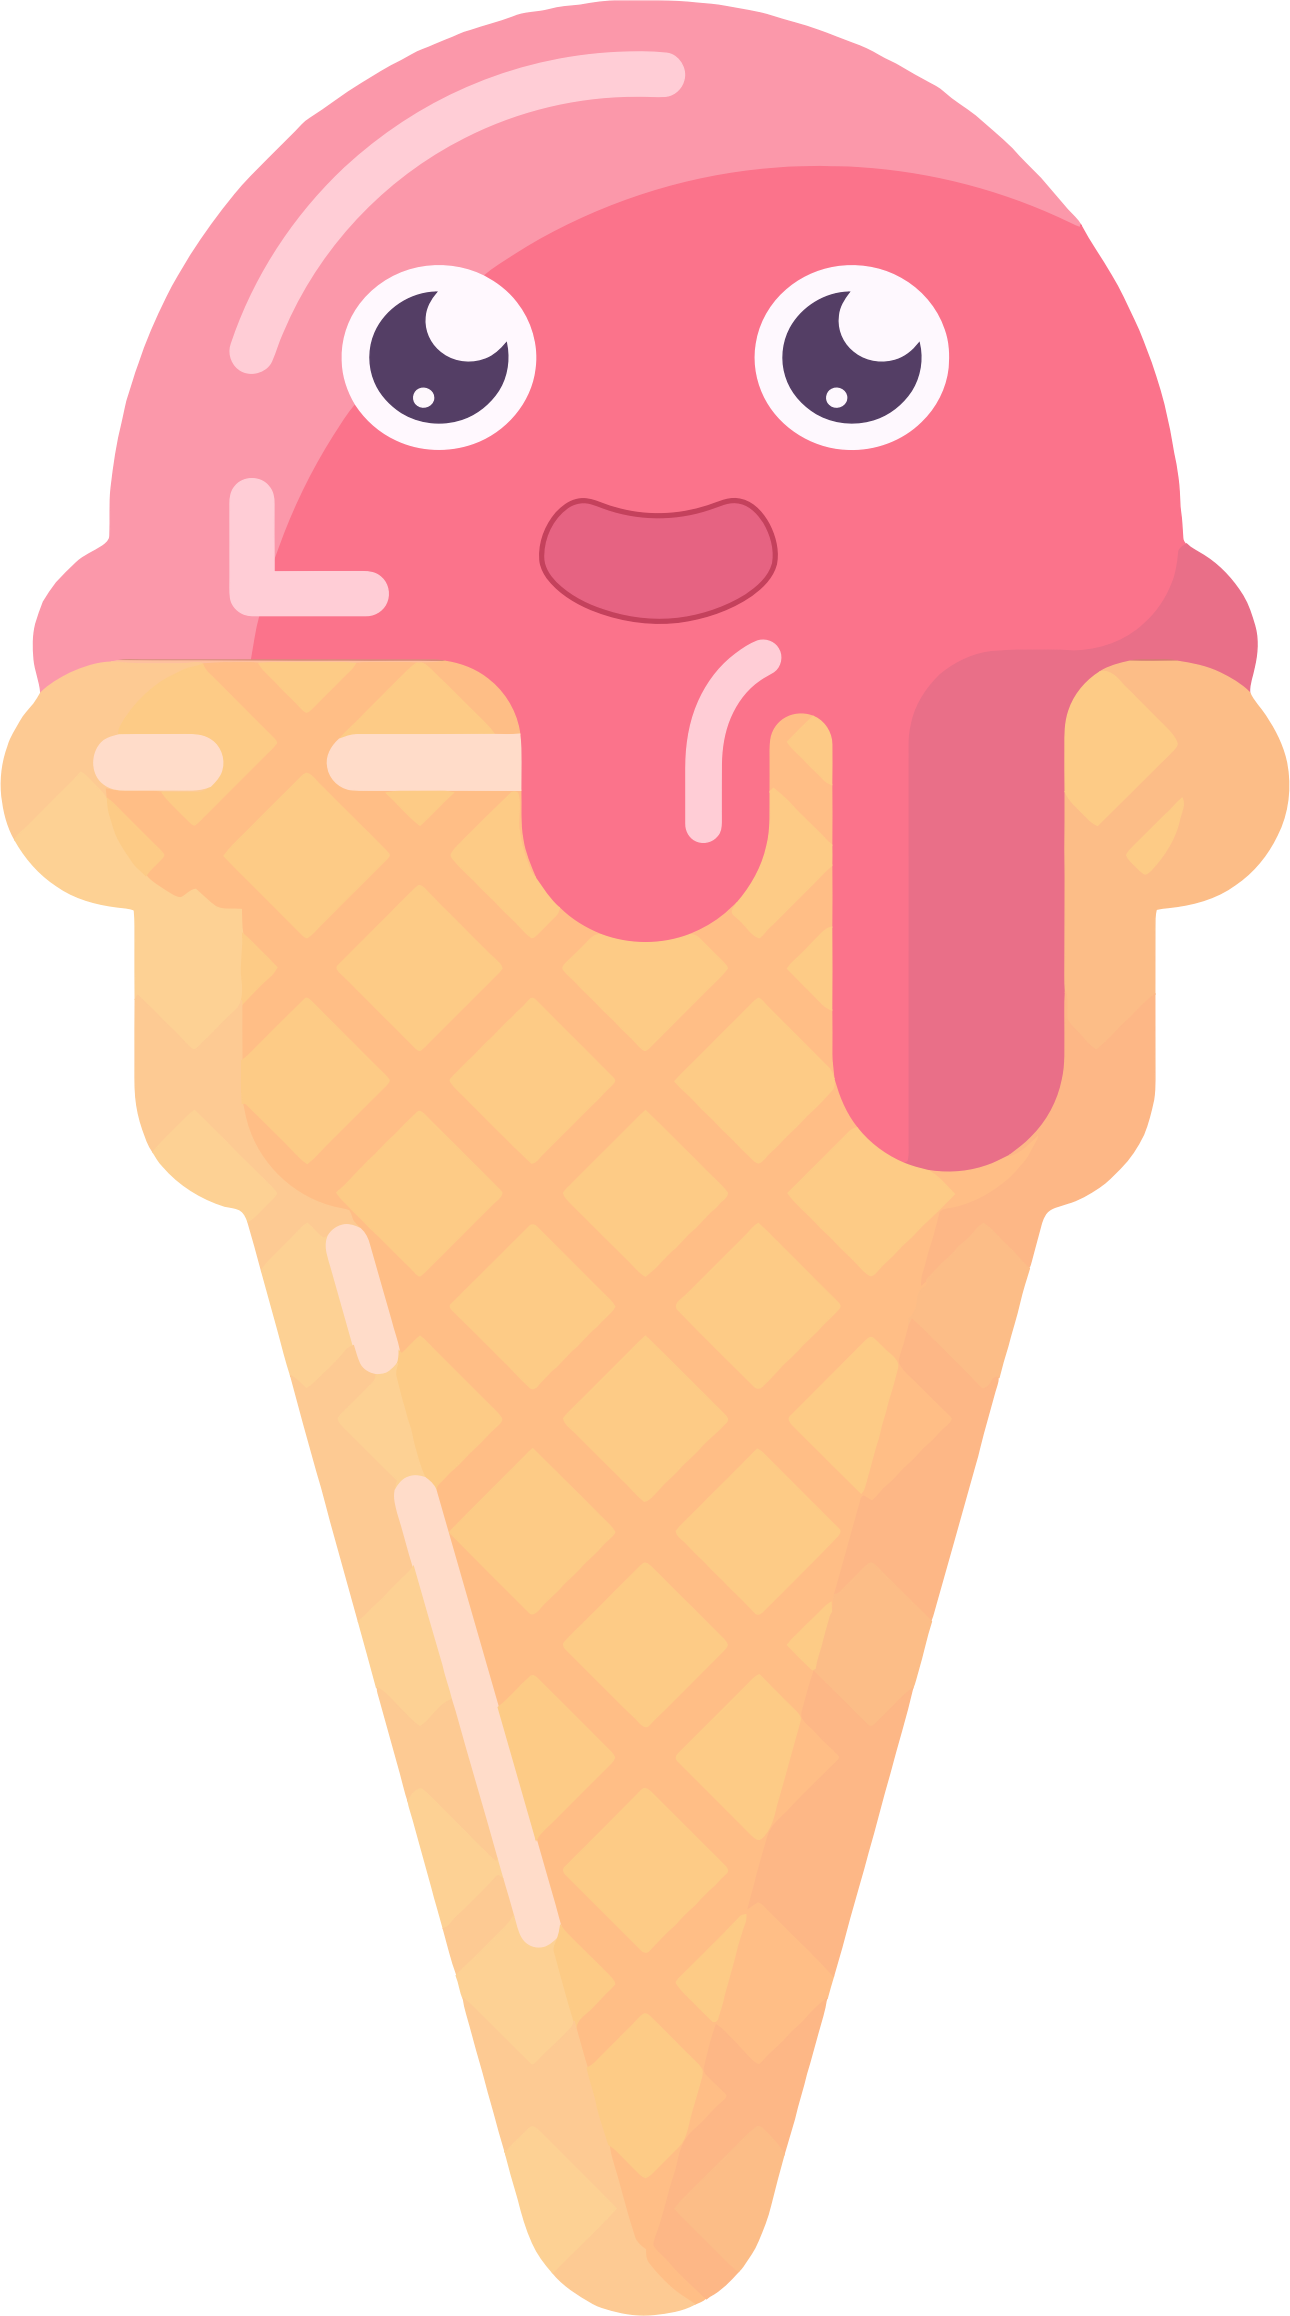 Cone clipart cute. Anthropomorphic ice cream big